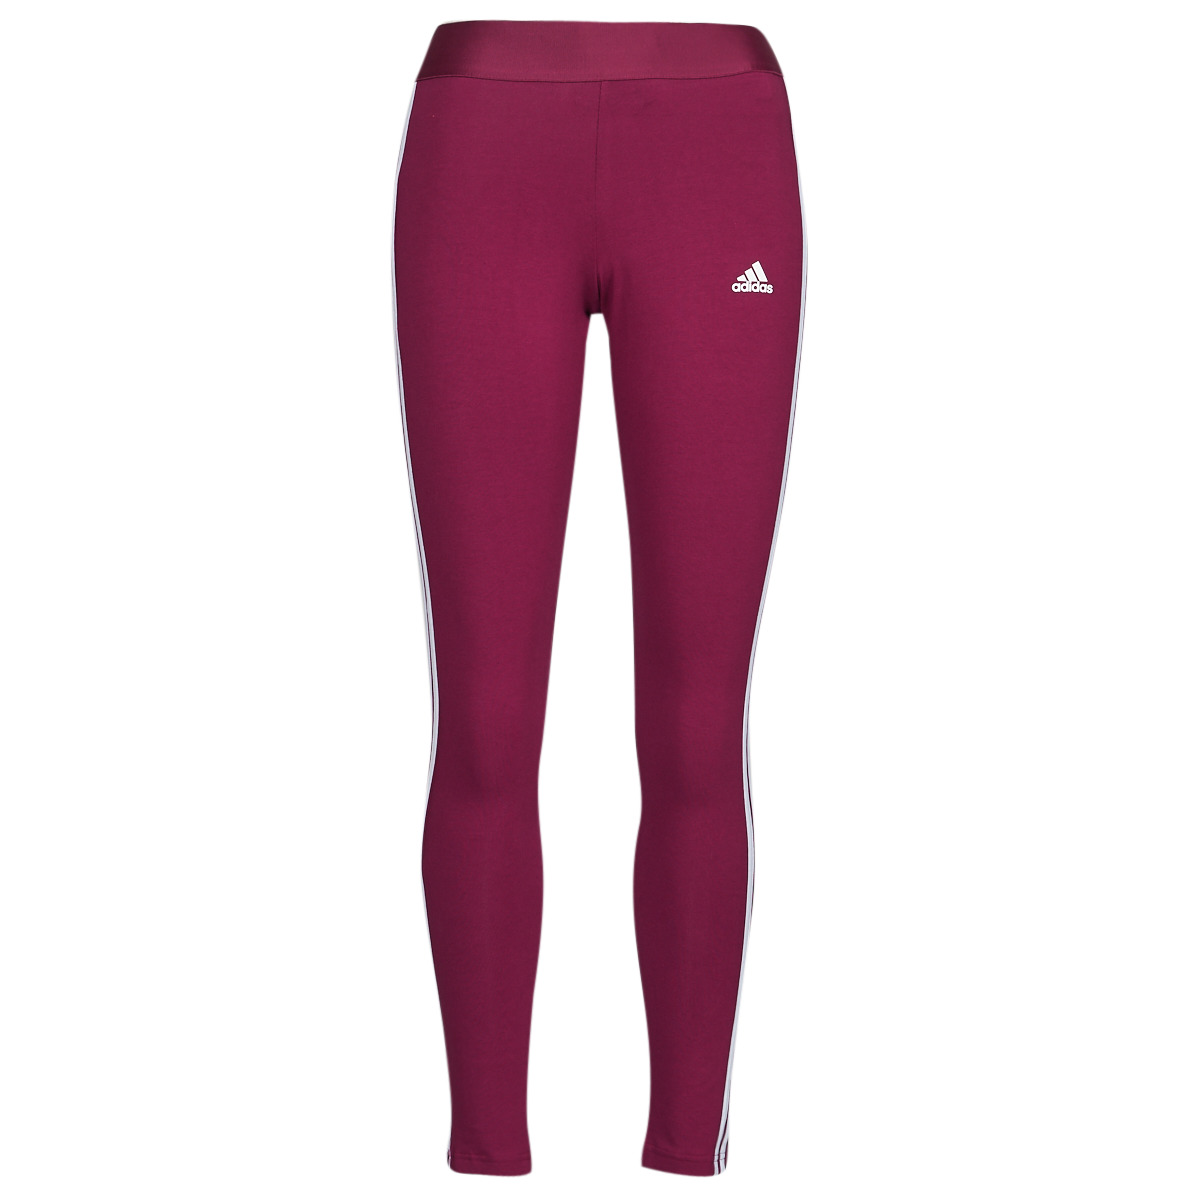 Ruhák Női Legging-ek Adidas Sportswear 3 Stripes Leggings Örökség / Burgundi  / Fehér